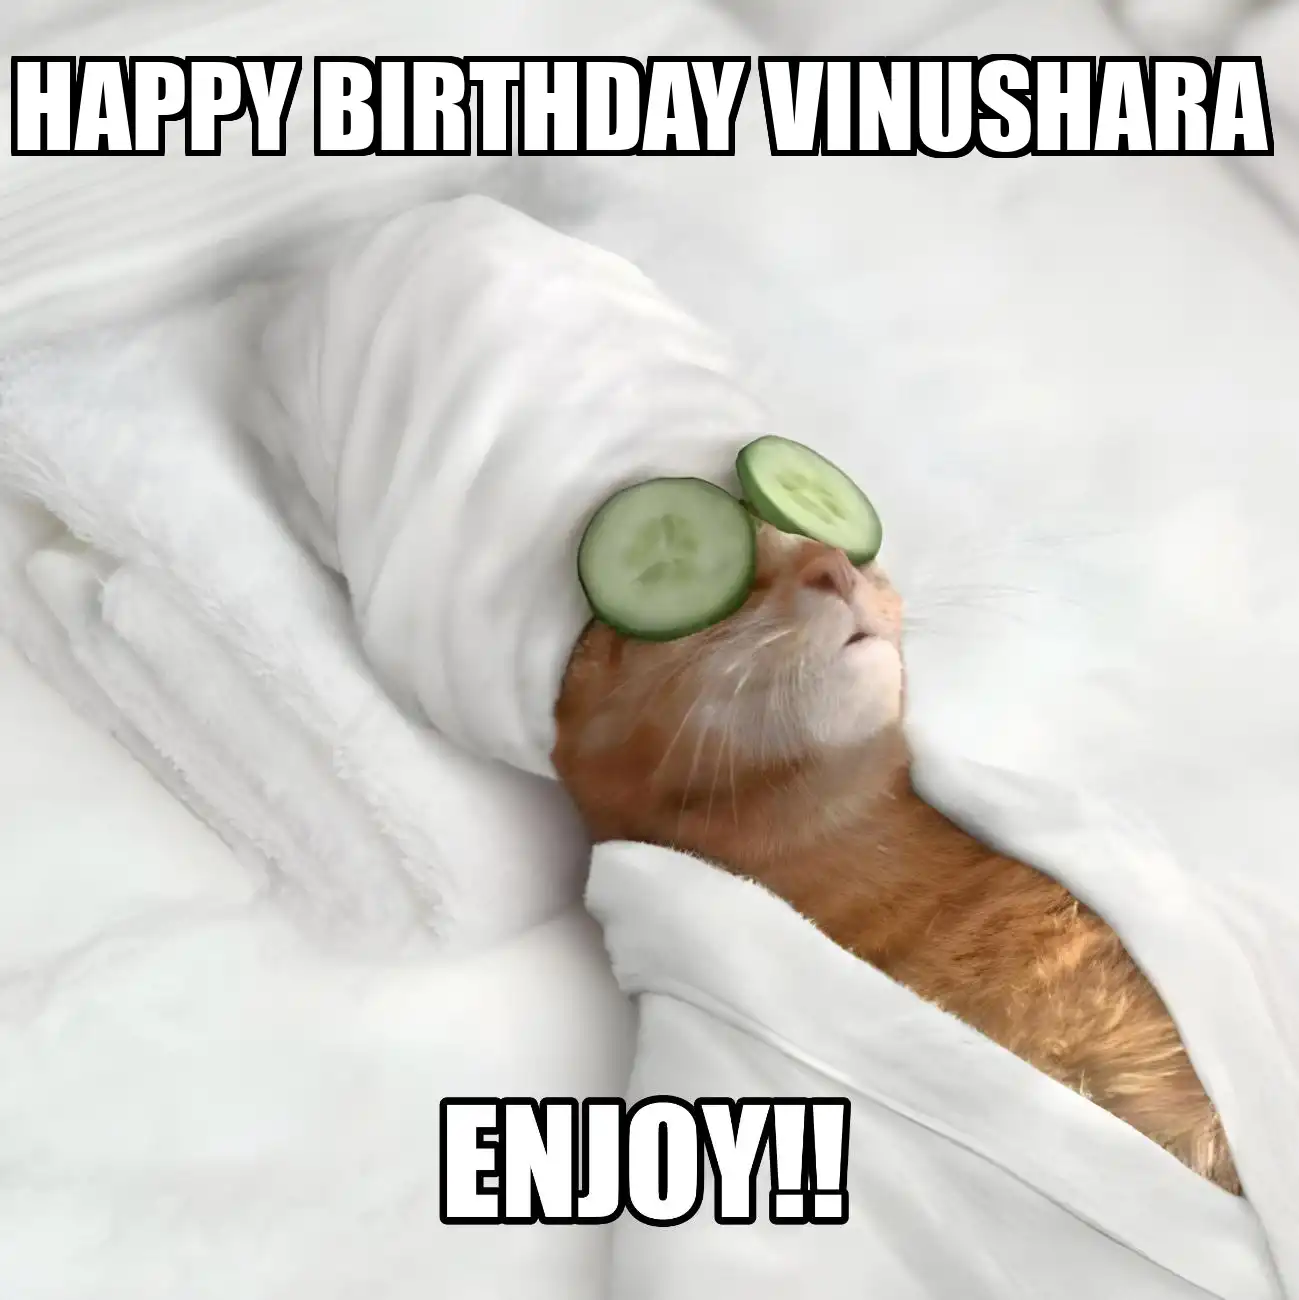 Happy Birthday Vinushara Enjoy Cat Meme